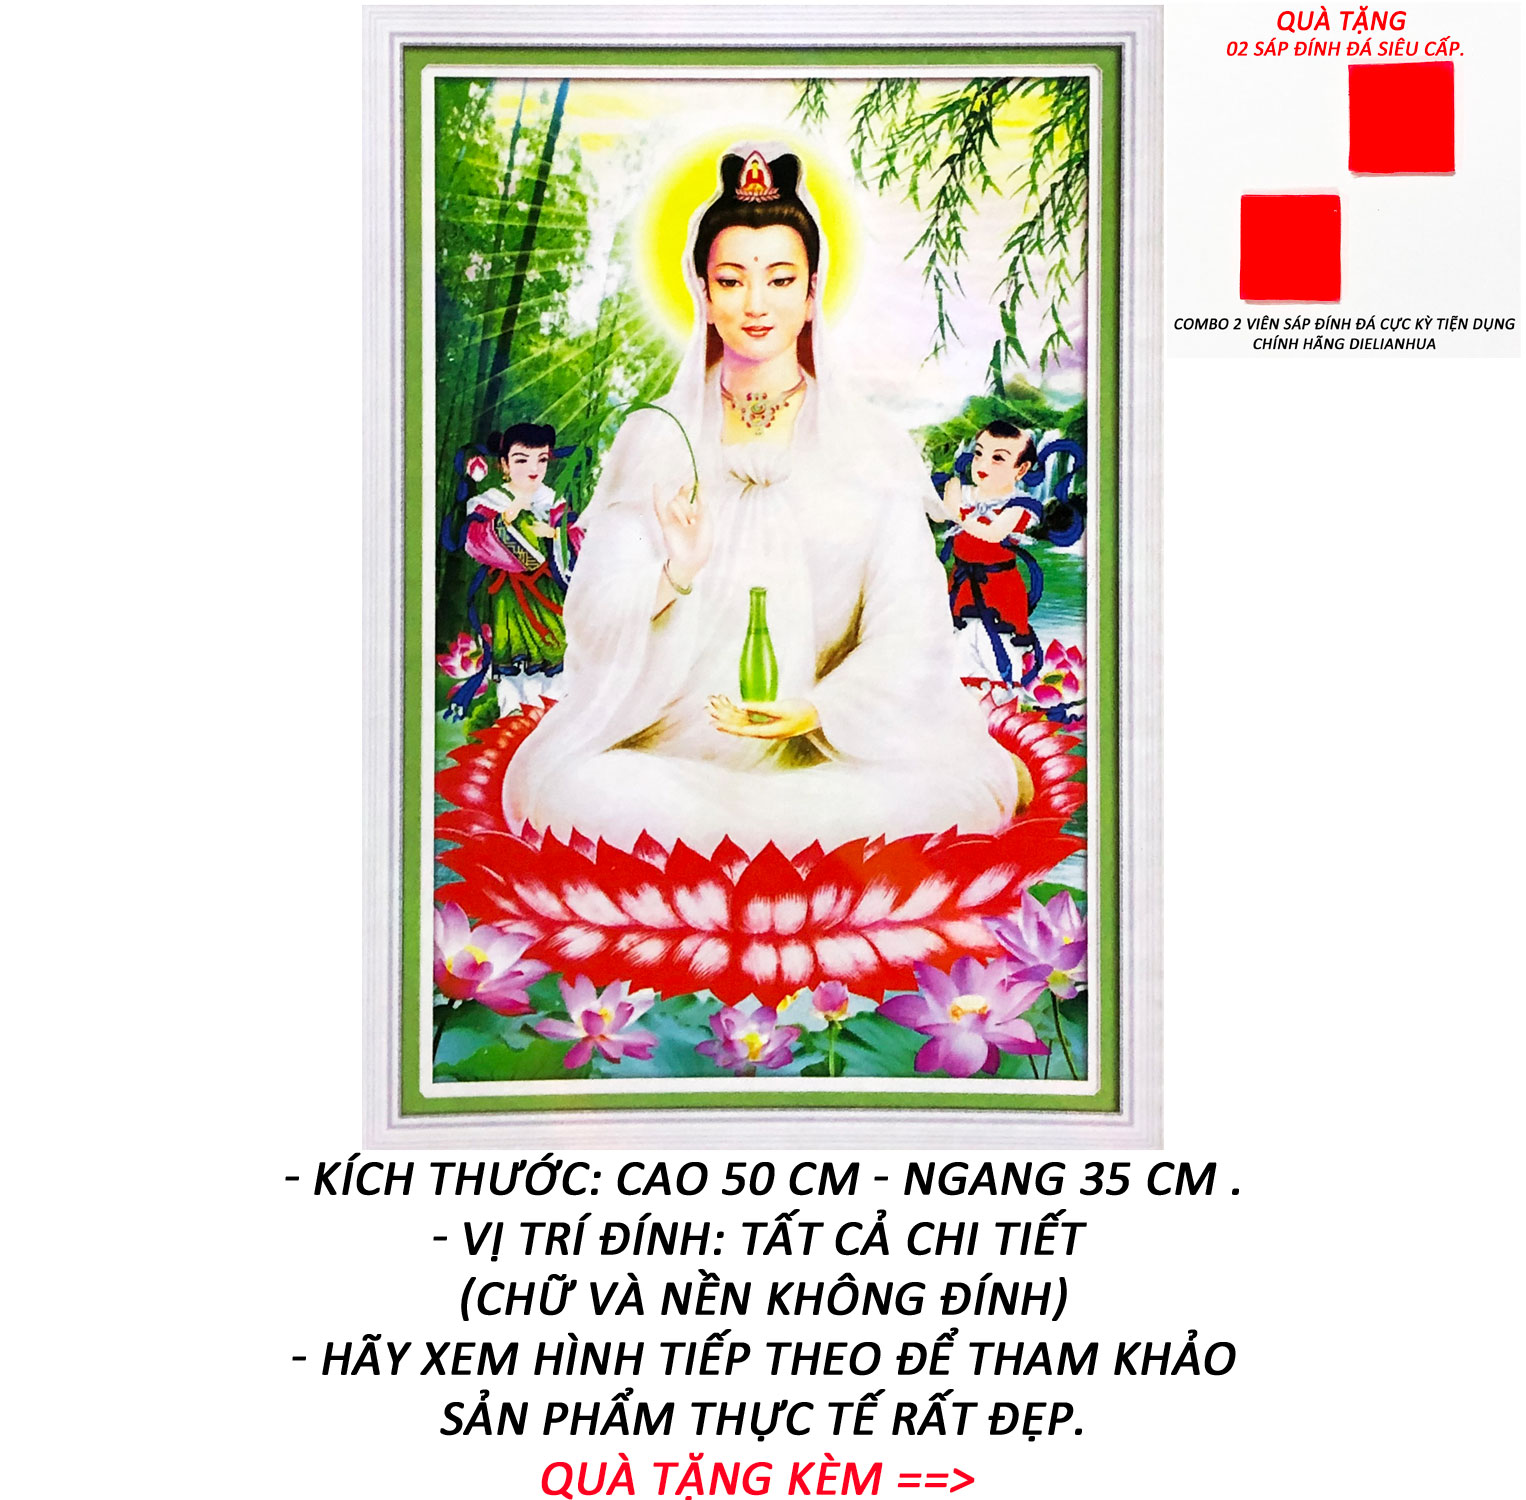 Tranh Phật Quan Âm có ý nghĩa gì? Mua tranh Phật Bà Quan Âm ở đâu?